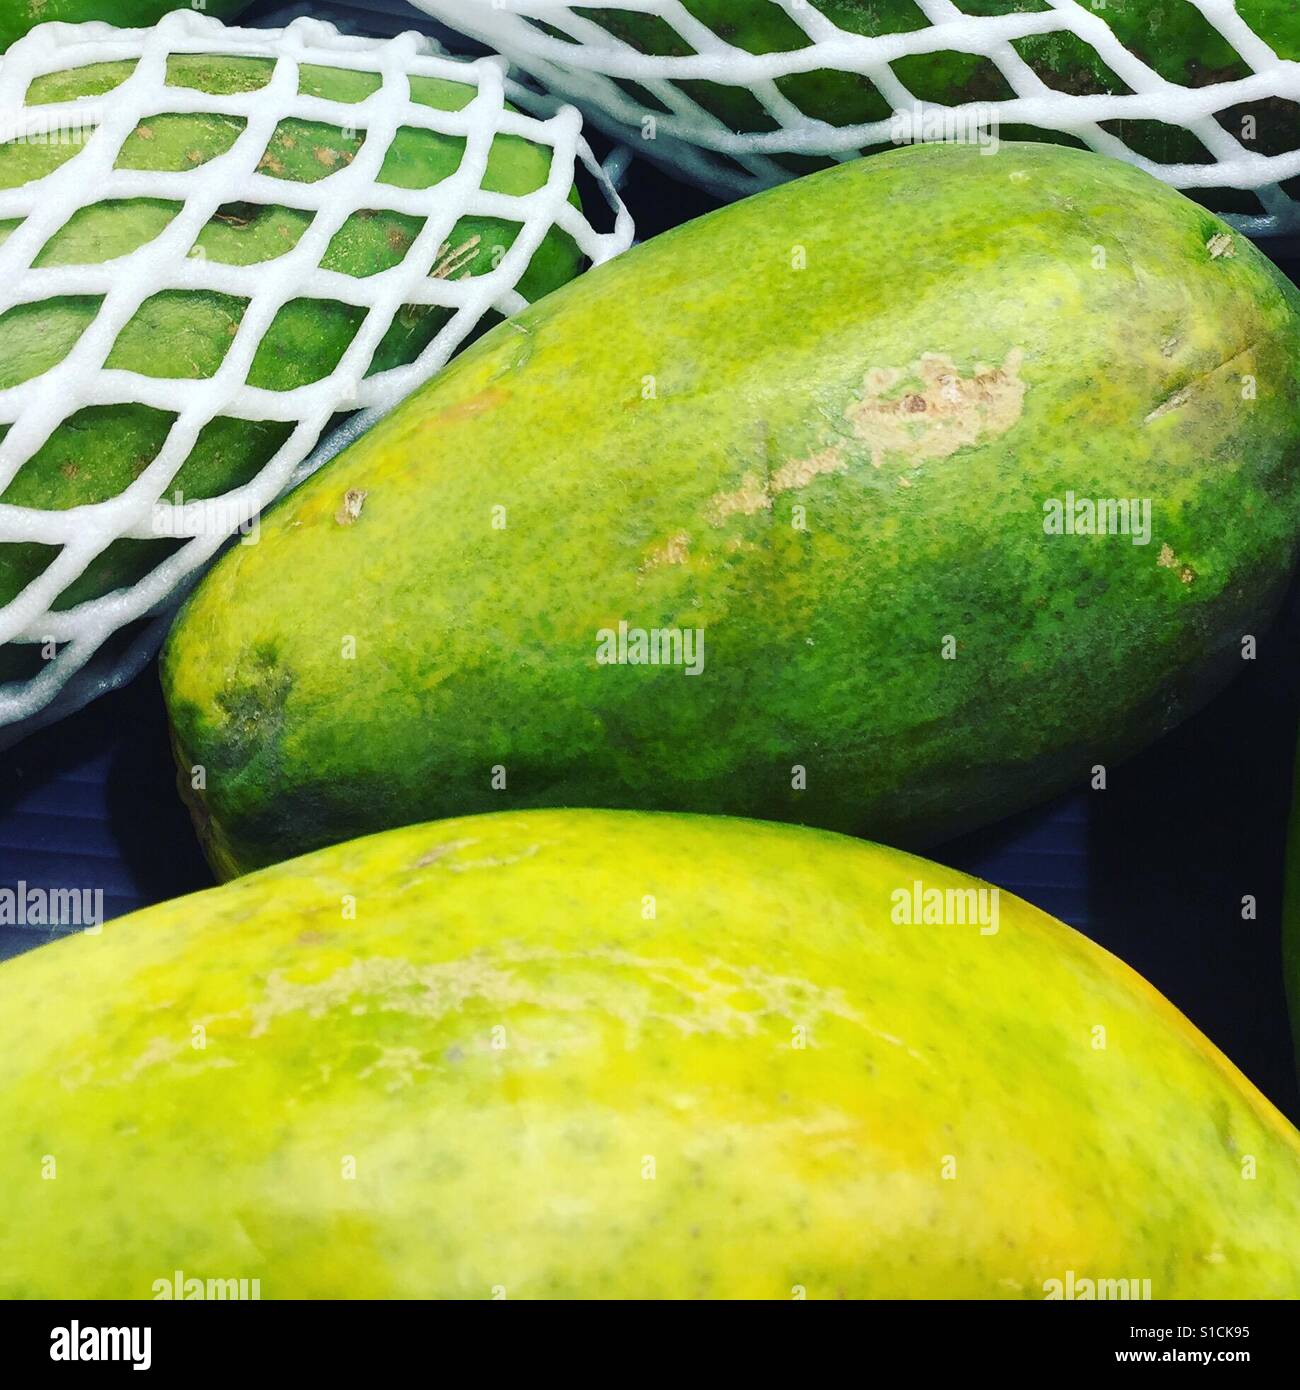 Papayas by K.R. Stock Photo